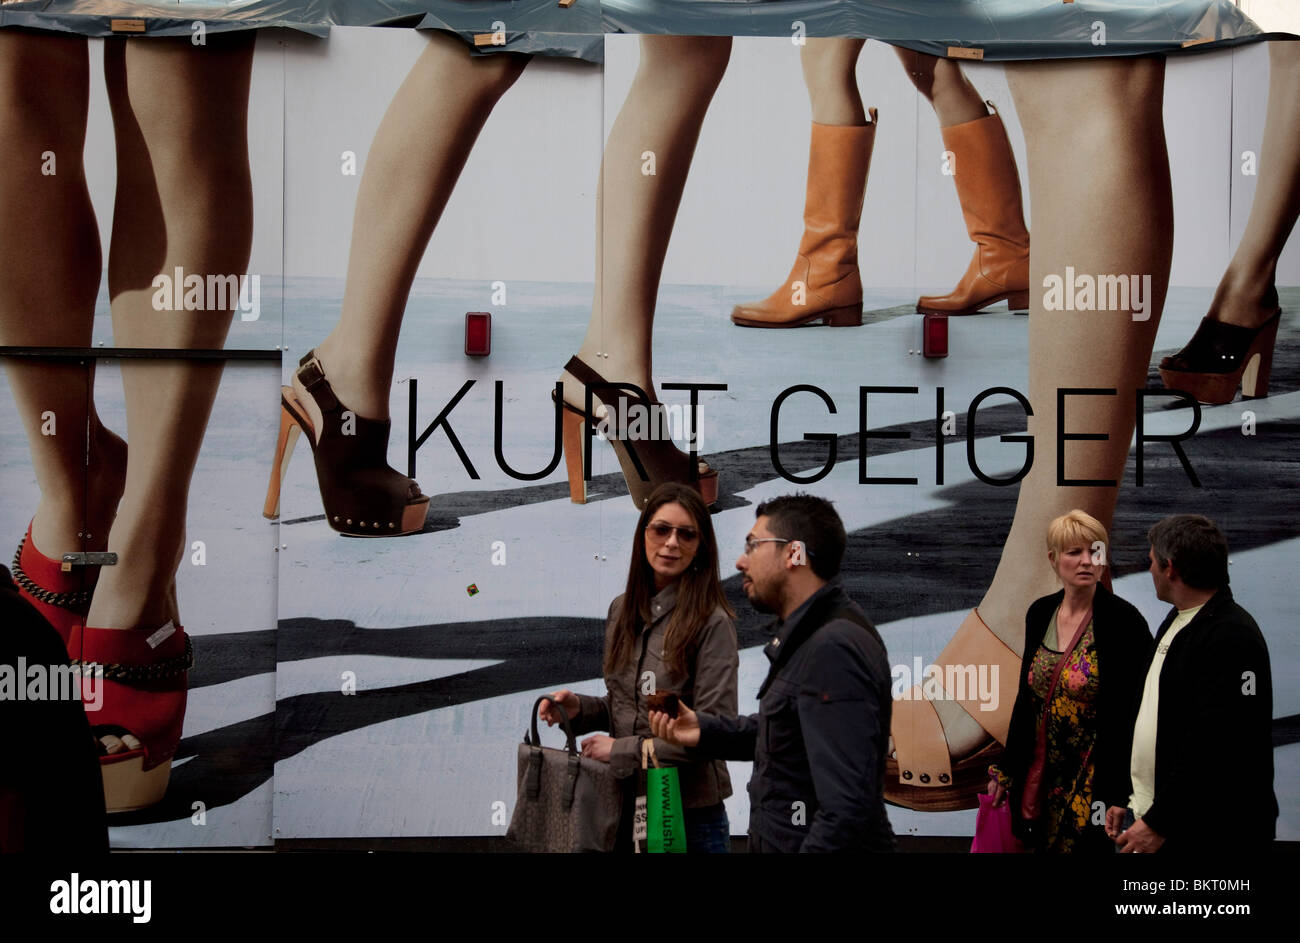 Les gens passent une grande affiche de la mode pour Kurt Geiger. Covent Garden dans le West End de Londres. Banque D'Images